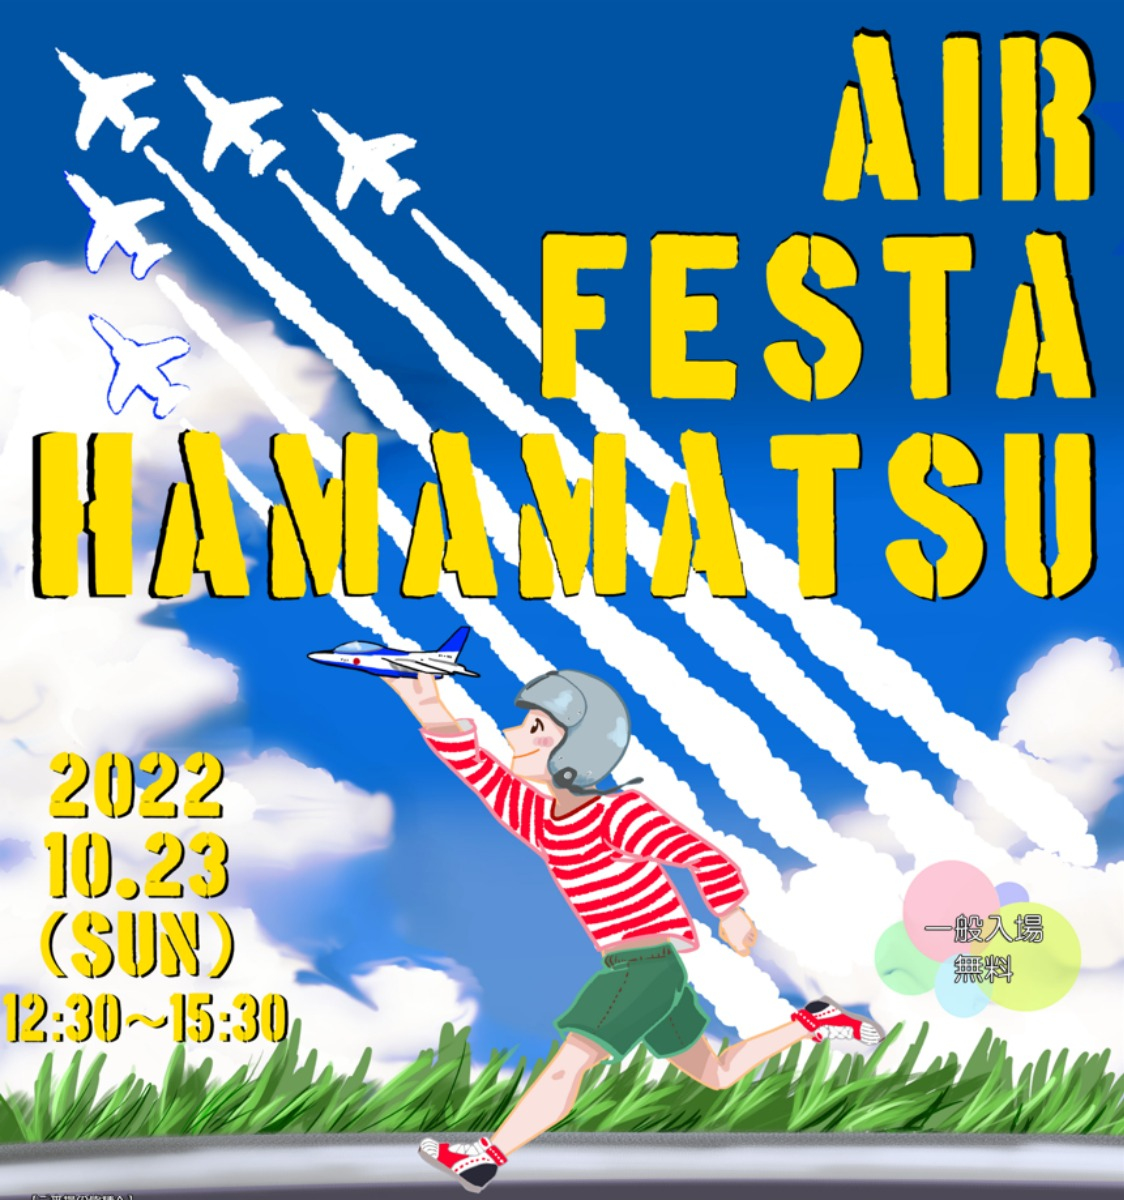 ブルーインパルスの展示飛行を予定！ 「エアフェスタ浜松2022」開催のお知らせ。 - 3年ぶりに開催！　飛行展示や訓練展示など内容は盛りだくさん。